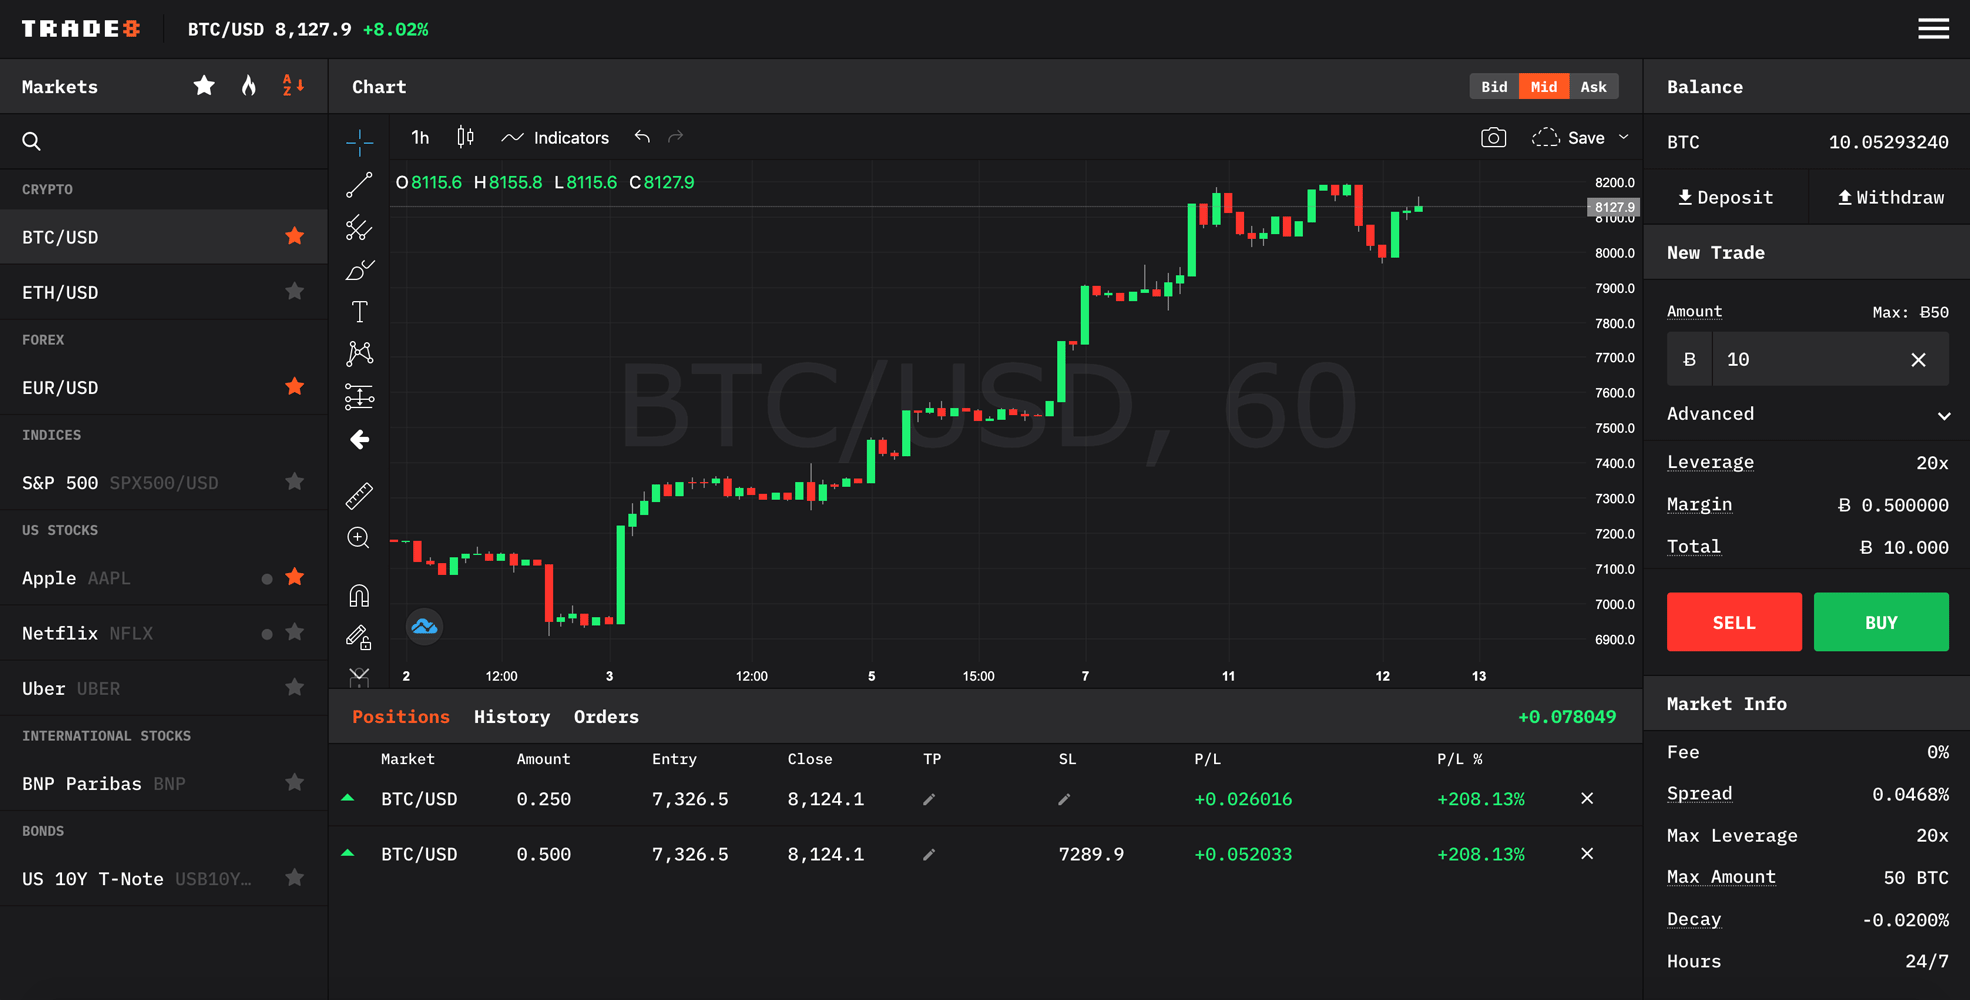 bitcoin trade site classifica bitcoin prezzo va giù